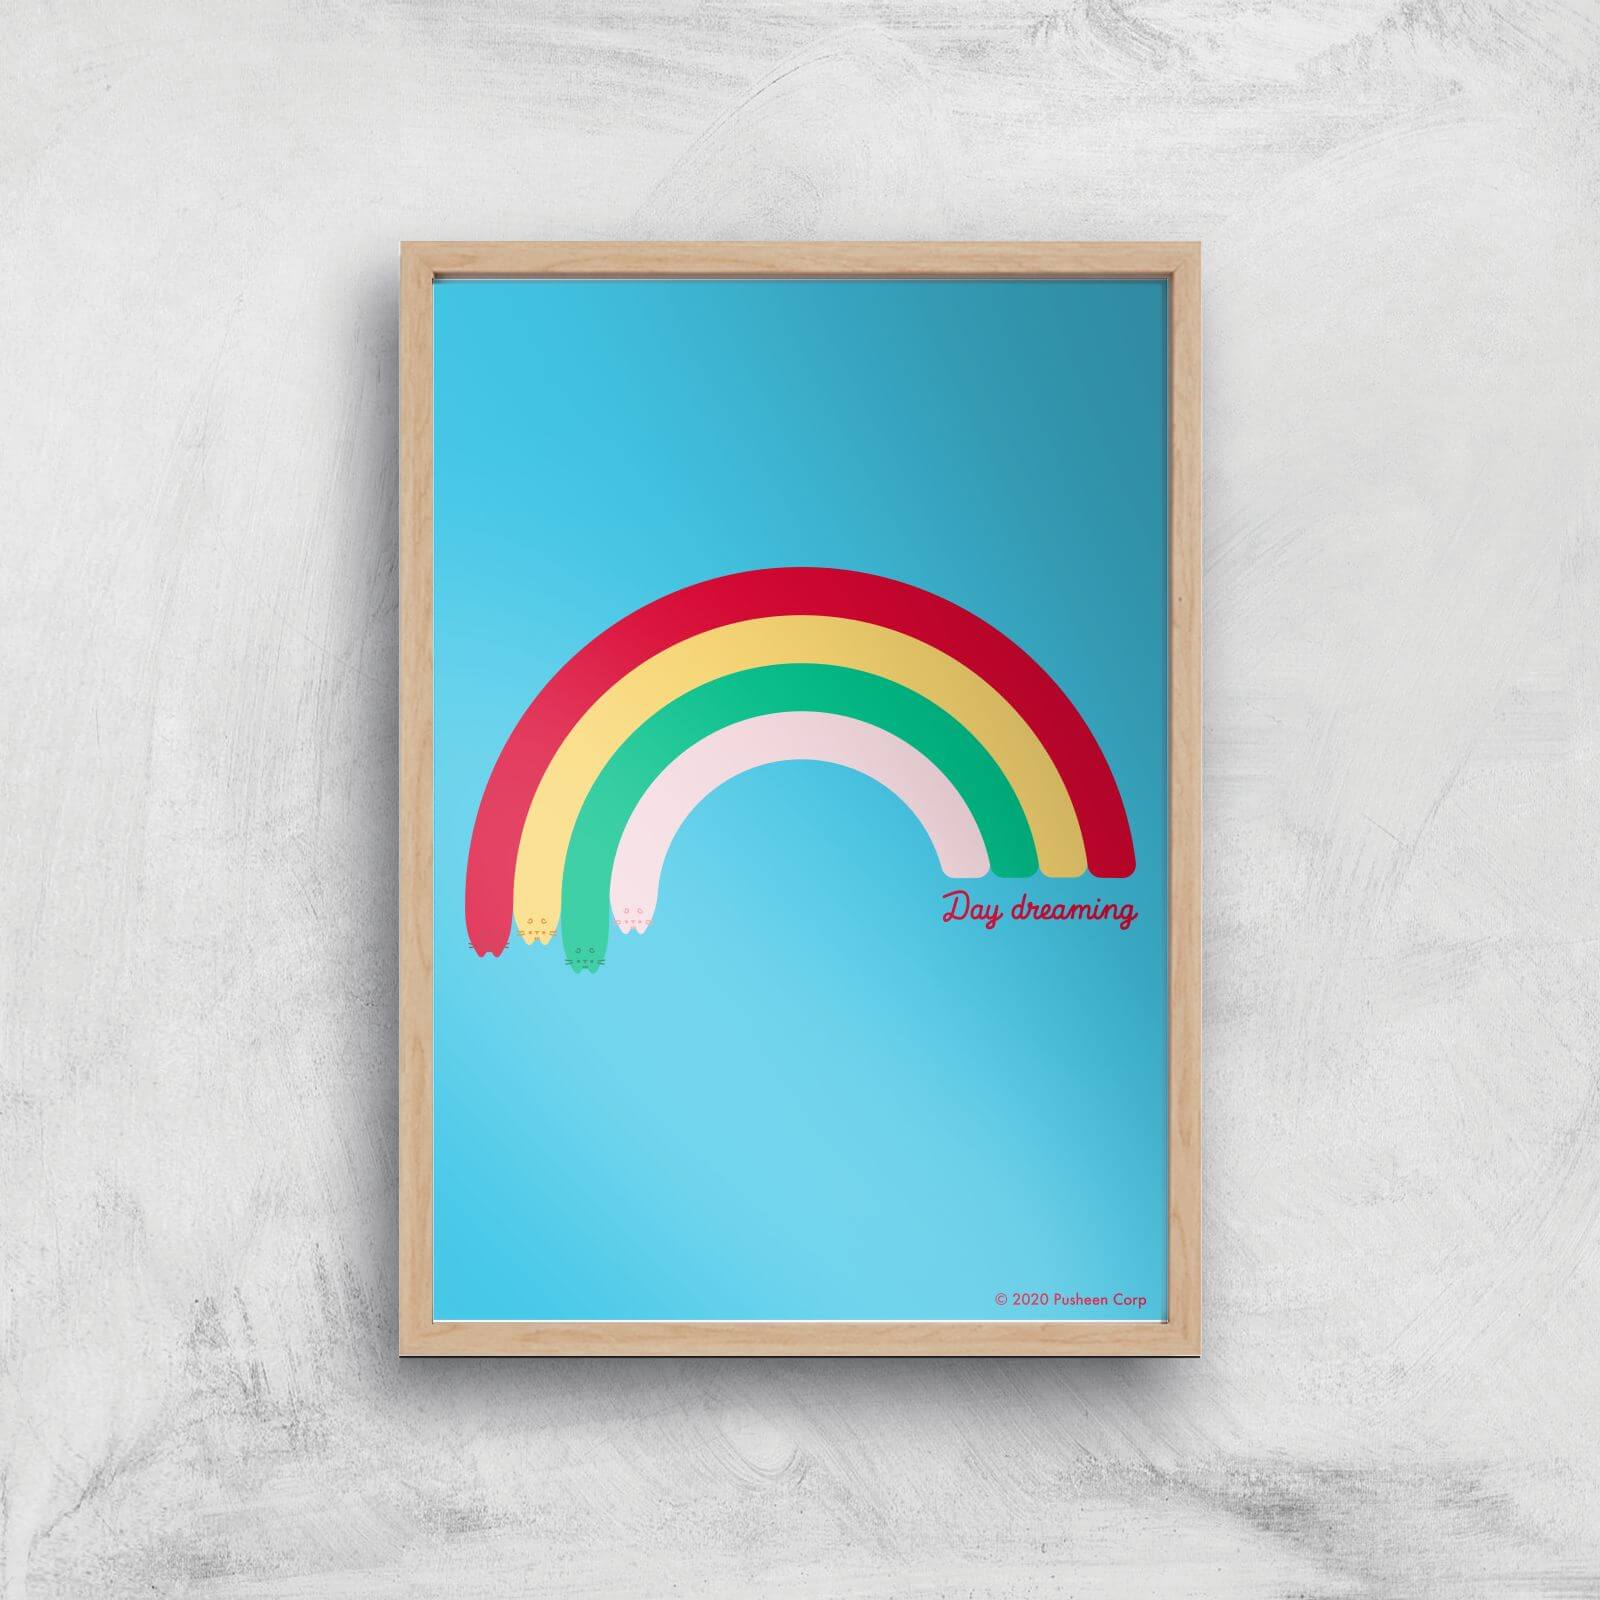 Pusheen Large Rainbow Giclee Art Print - A4 - Wooden Frame